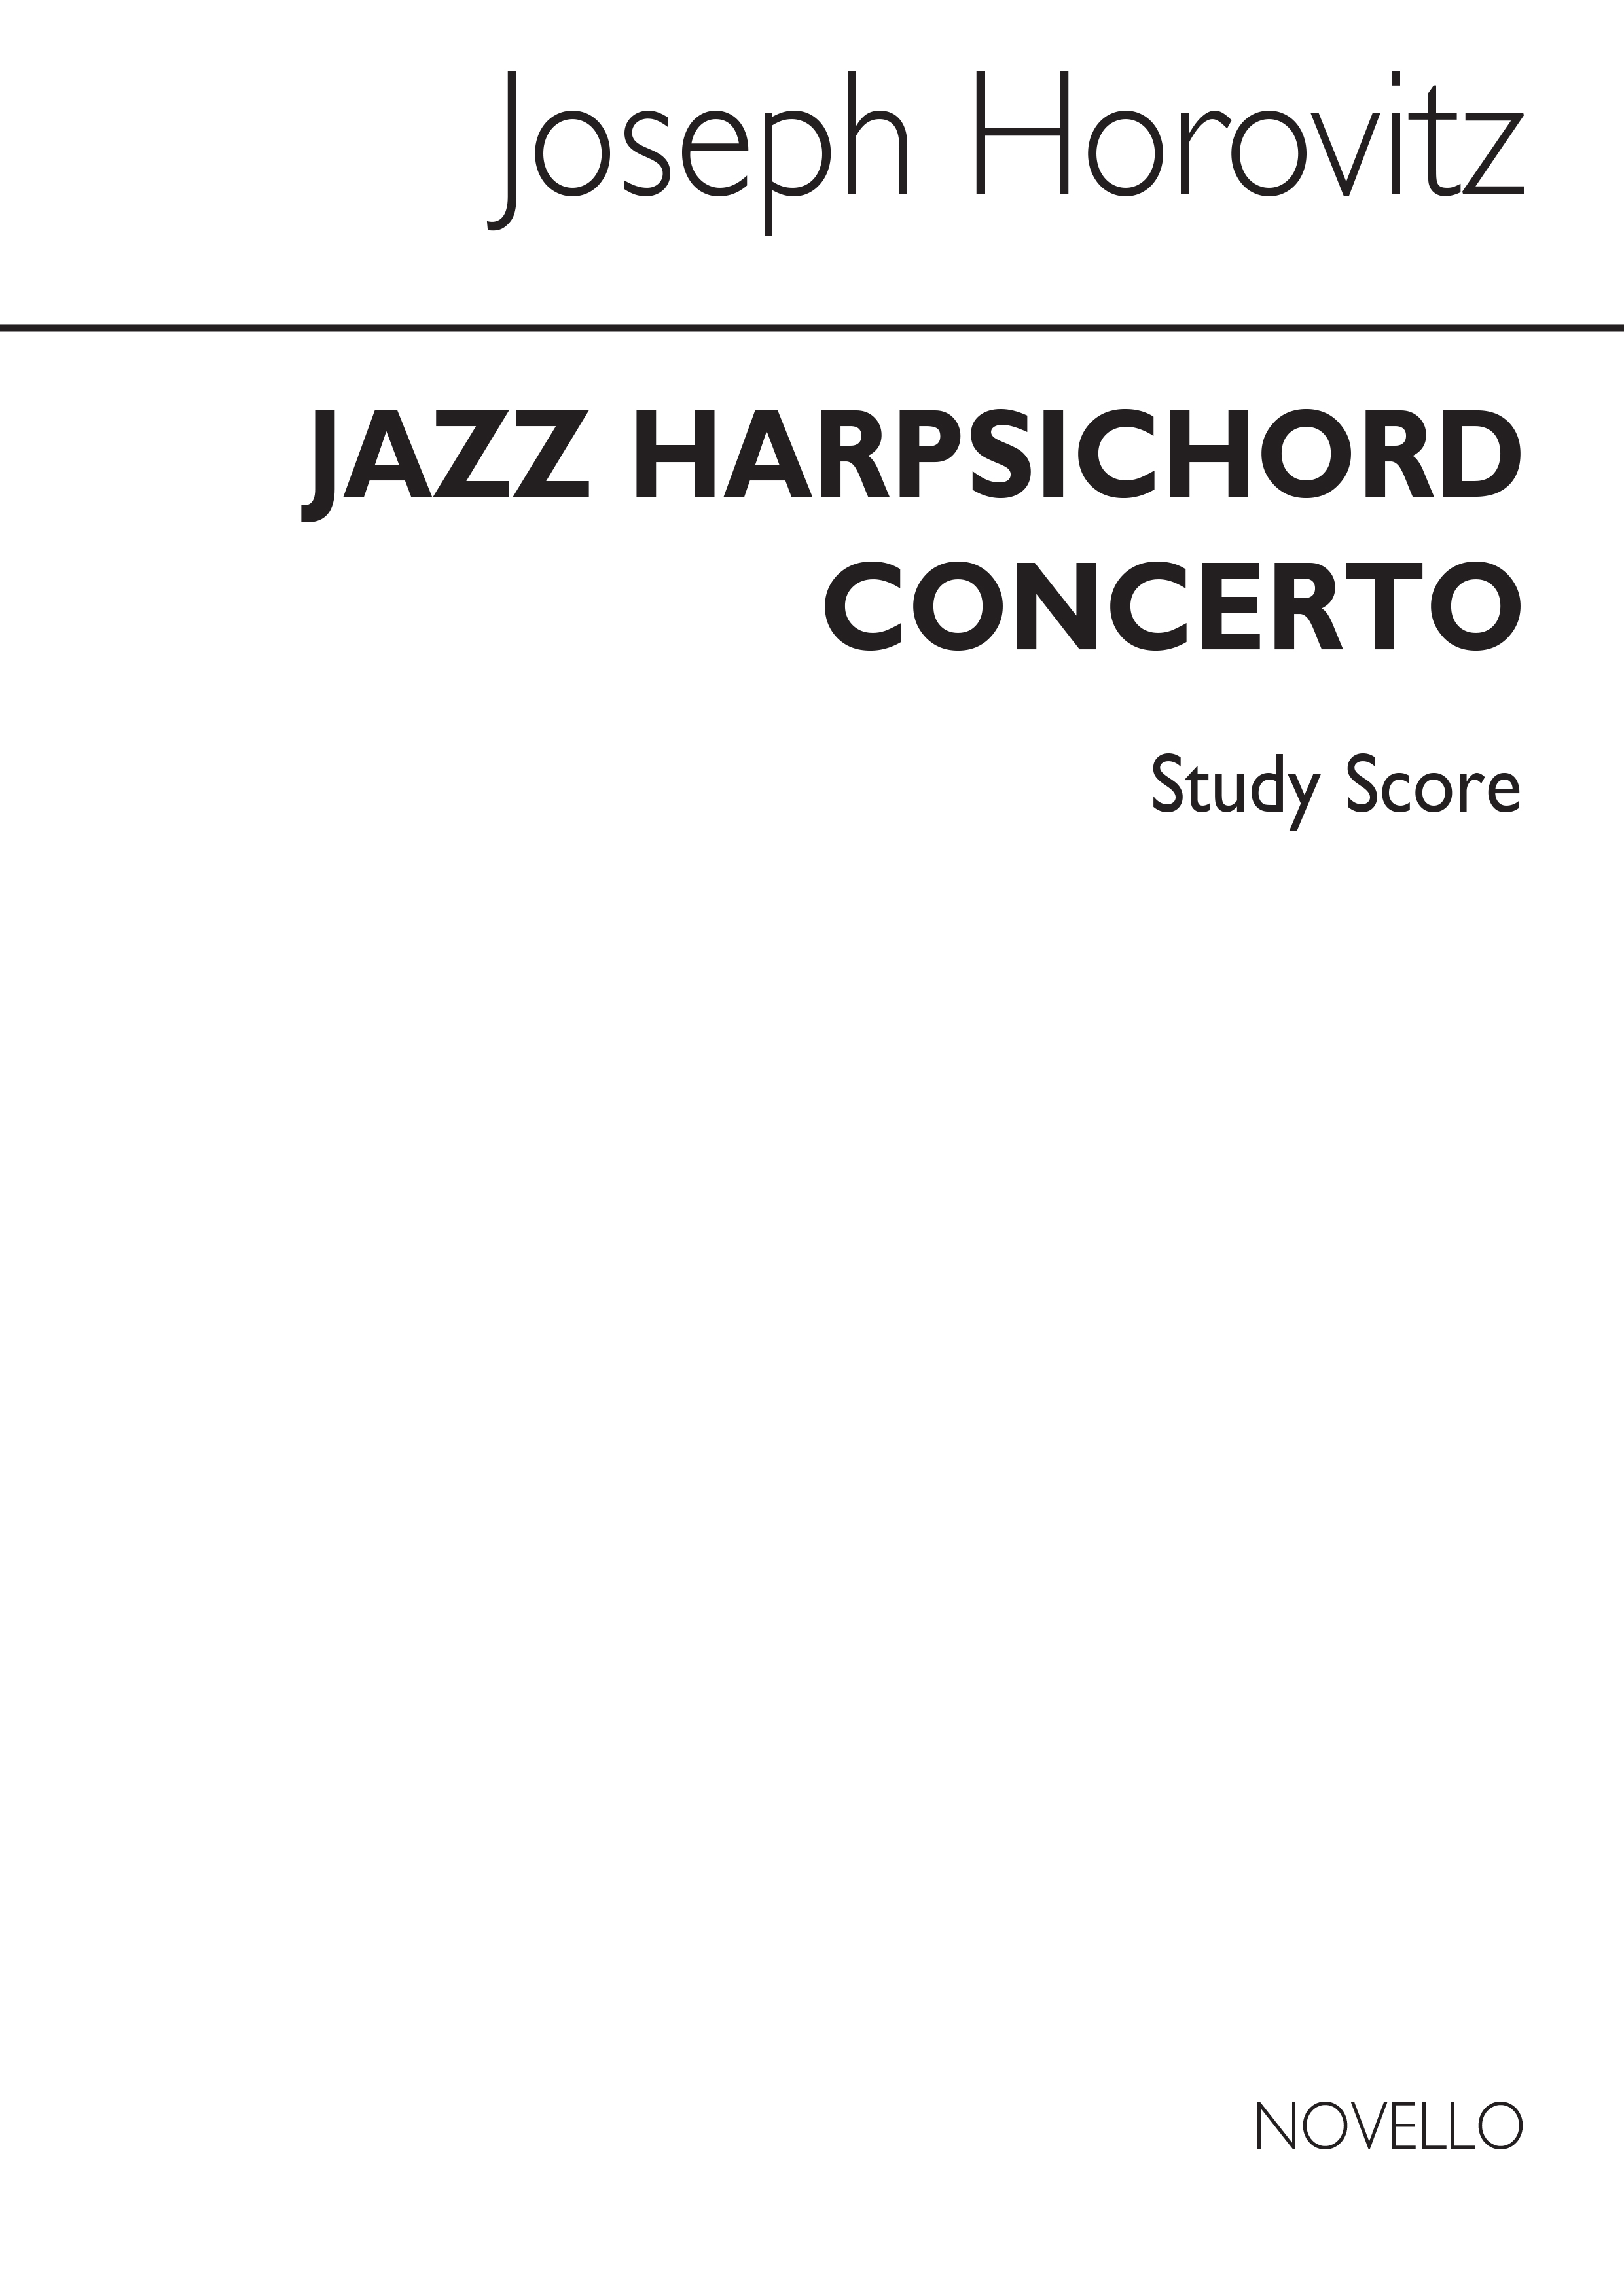 Horovitz: Jazz Harpsichord Concerto Study Score